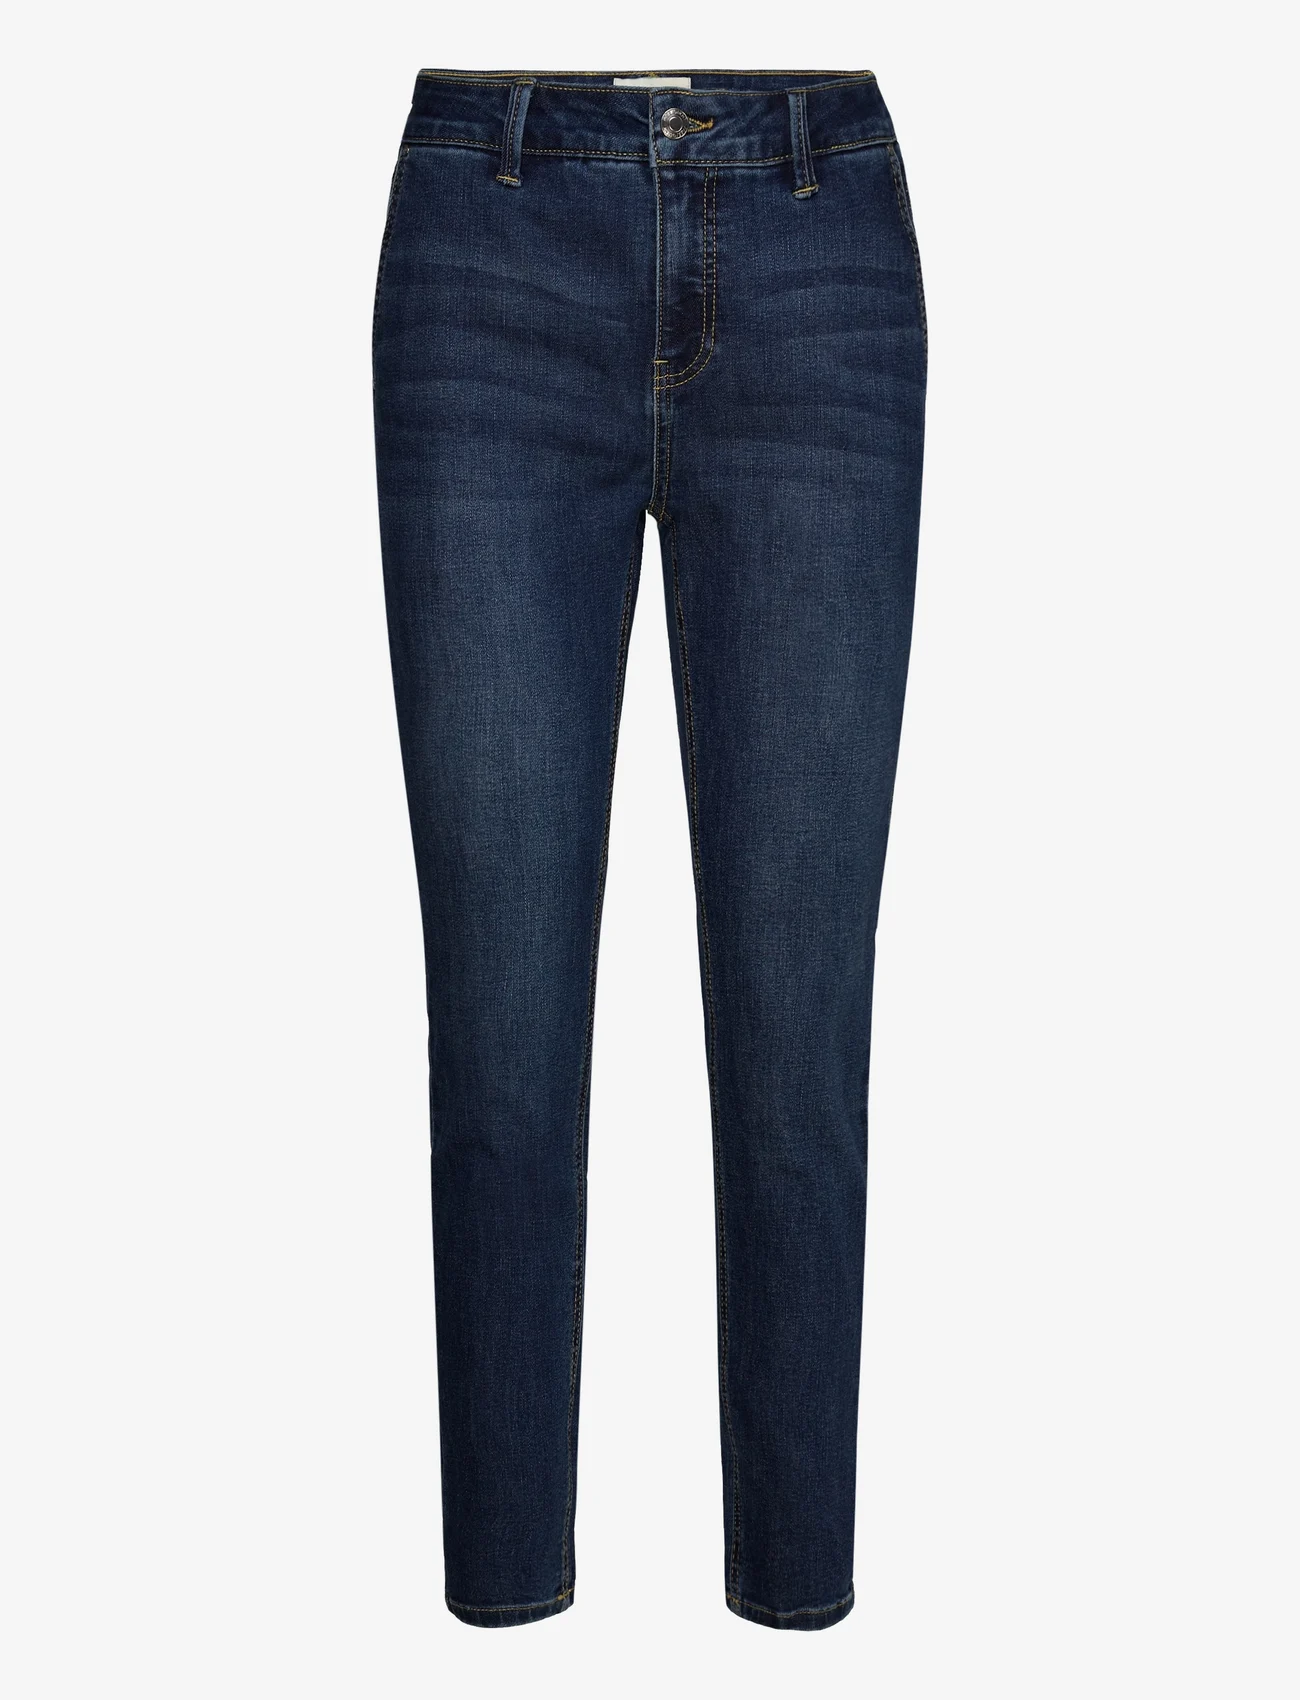 FREE/QUENT - FQJANE-PANT - slim jeans - medium blue denim - 0